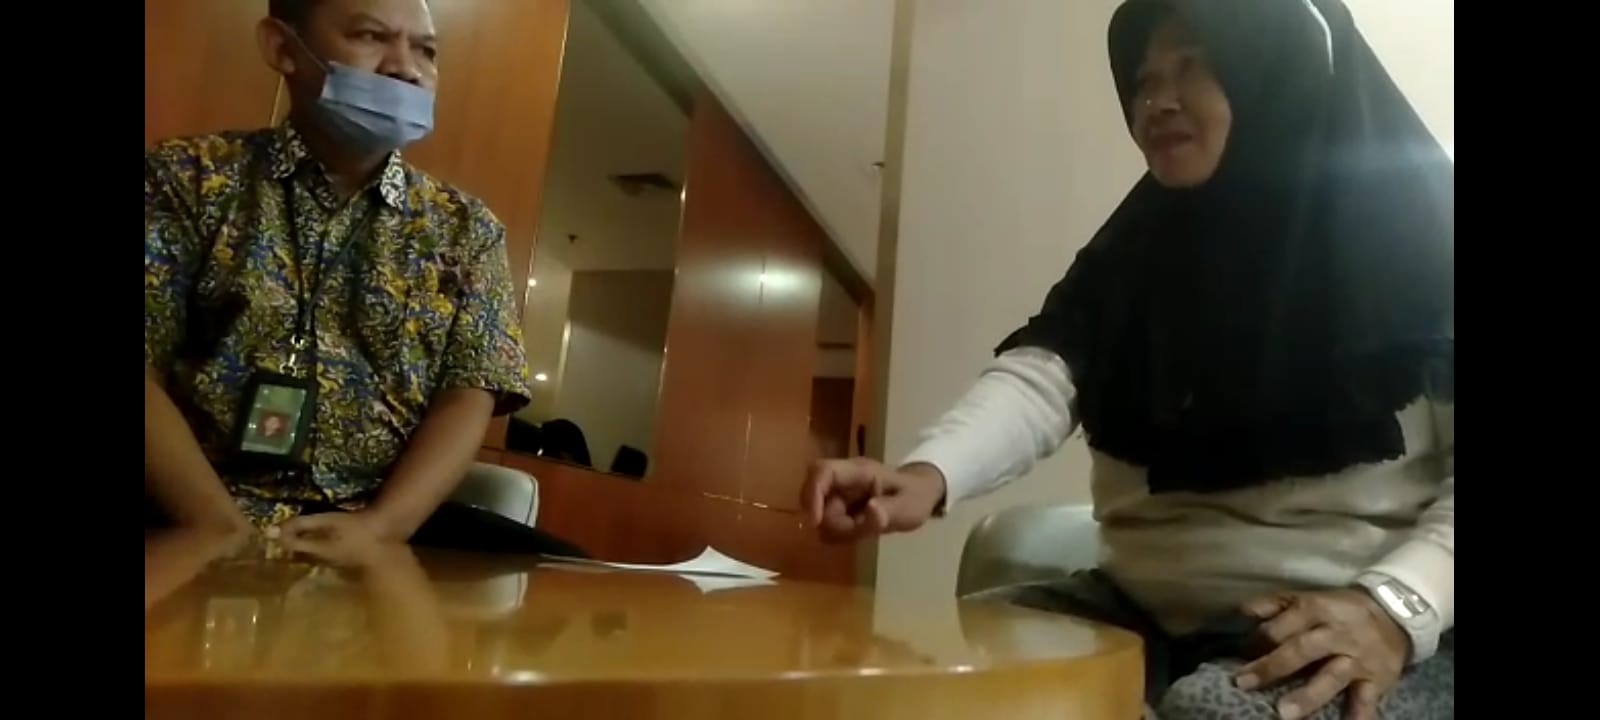 Rita Sari Membeberkan Permasalahan kepada Petugas di Jakarta